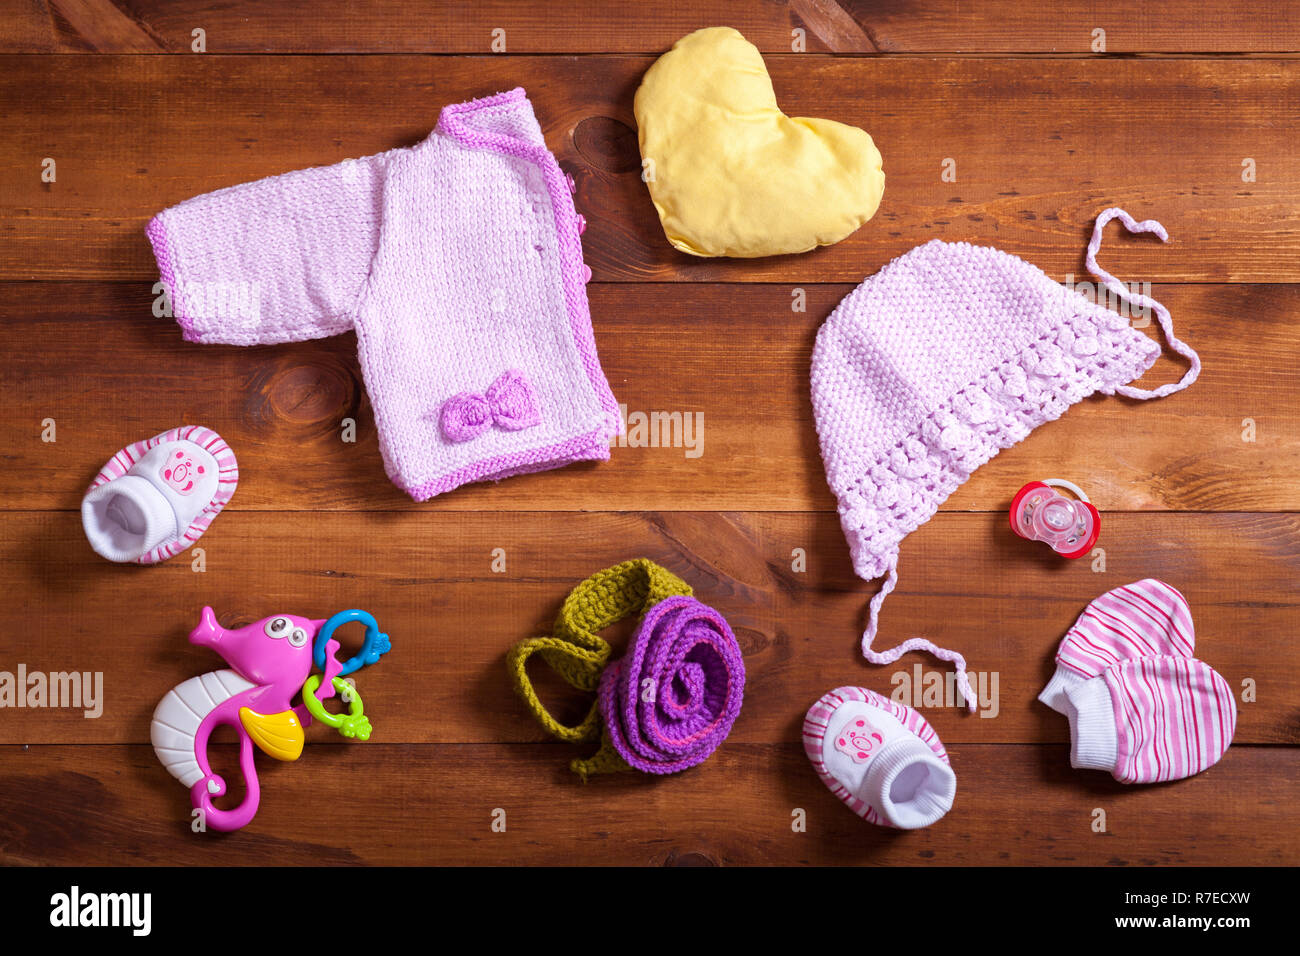 Concepto de de ropa de bebé, Rosa ropa tejida, juguetes y accesorios de madera color marrón fondo, niño recién nacido paño para moda joven, moderno baby sh Fotografía de stock -